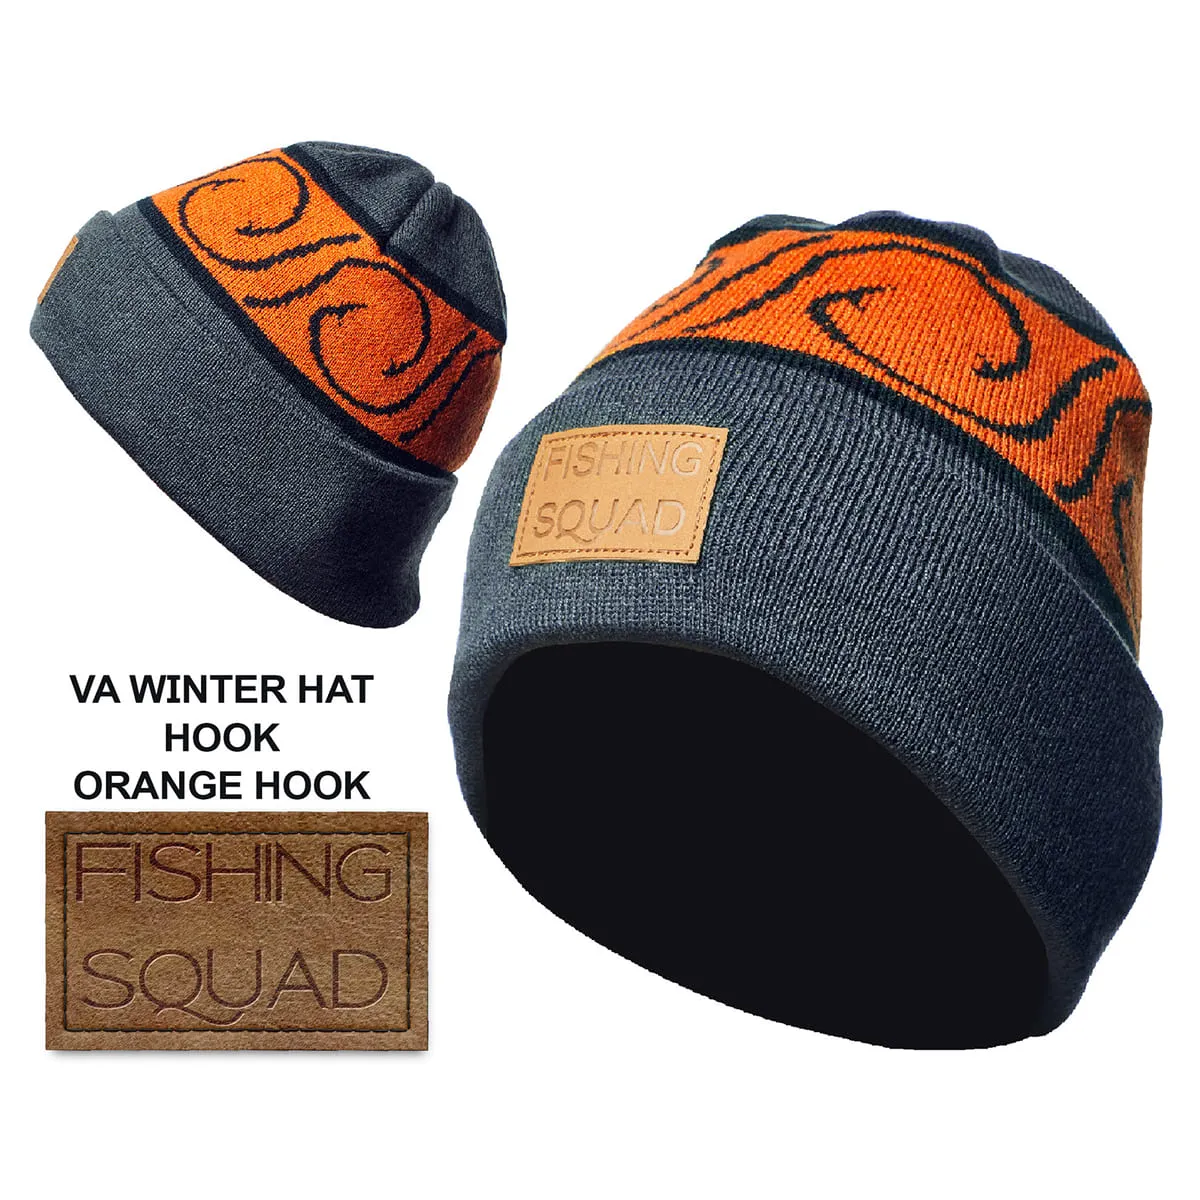 Шапка Winter Hat Cuff Fishing squad - orange hook L (58-60cm) по СУПЕР  ценам в Украине